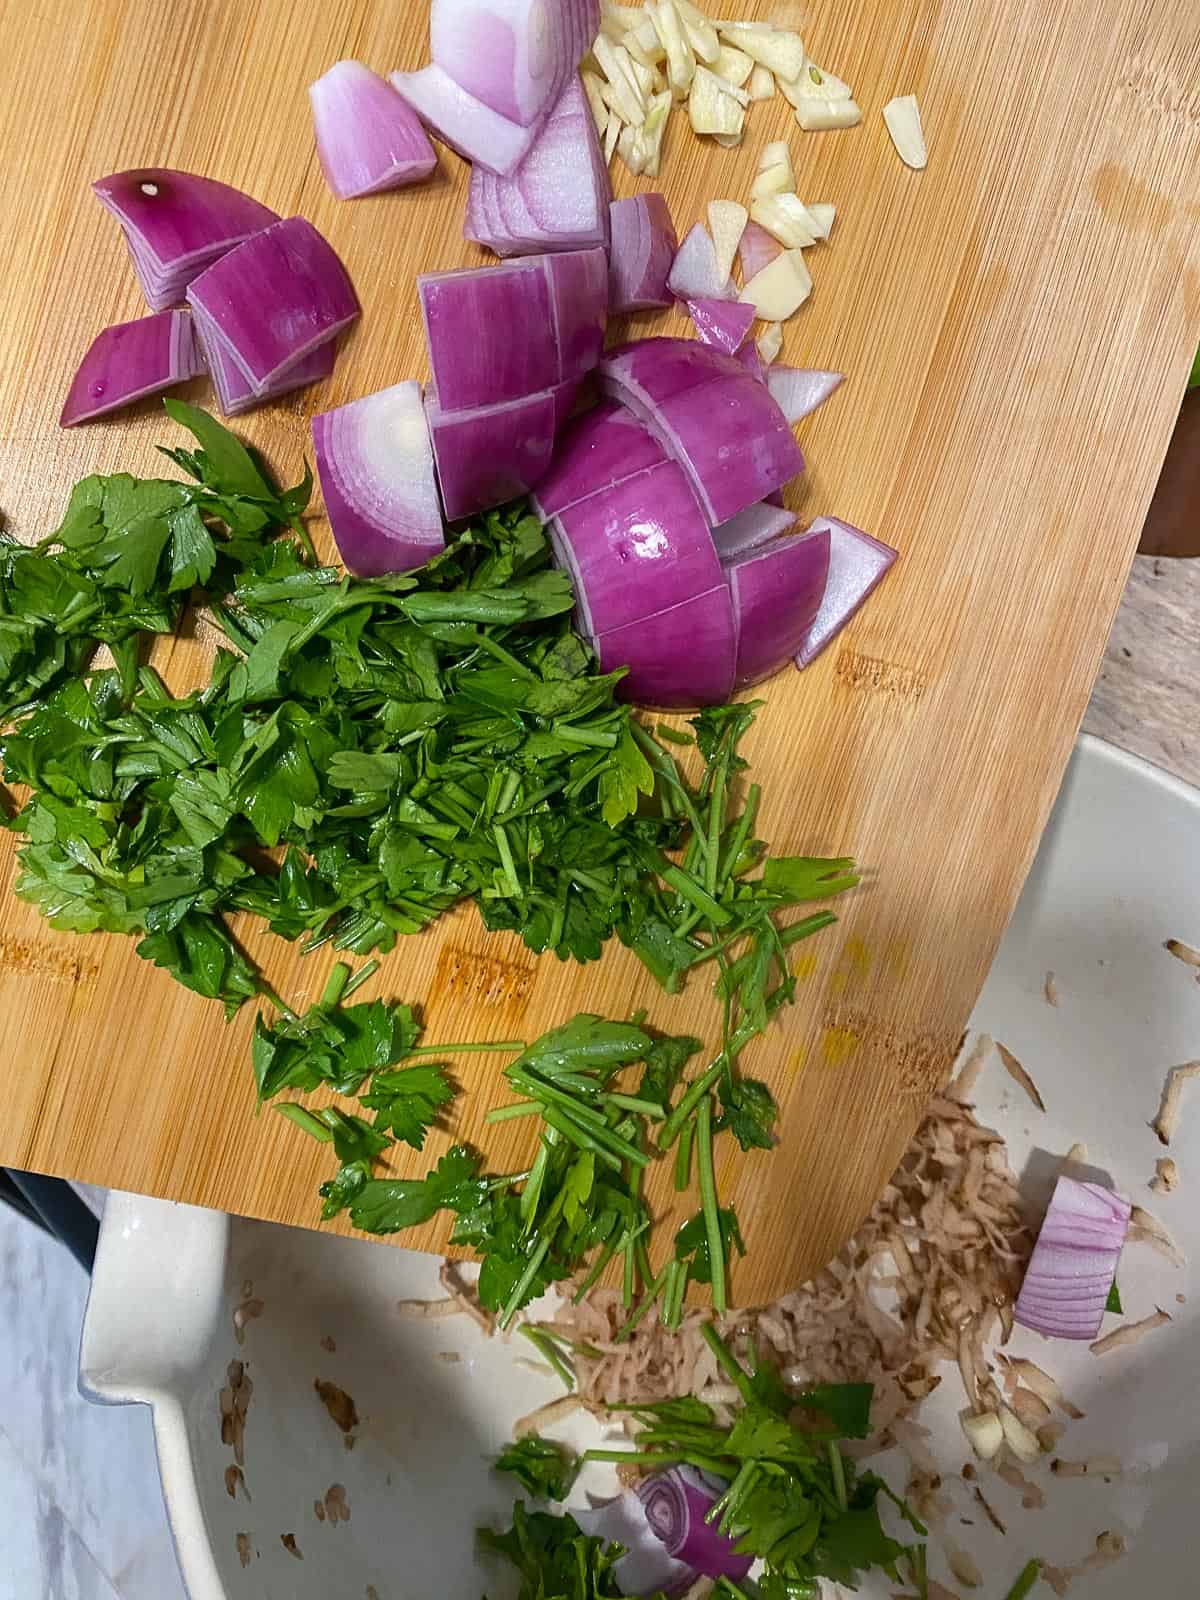 فرآیند اضافه ، سبزیجات به کاسه